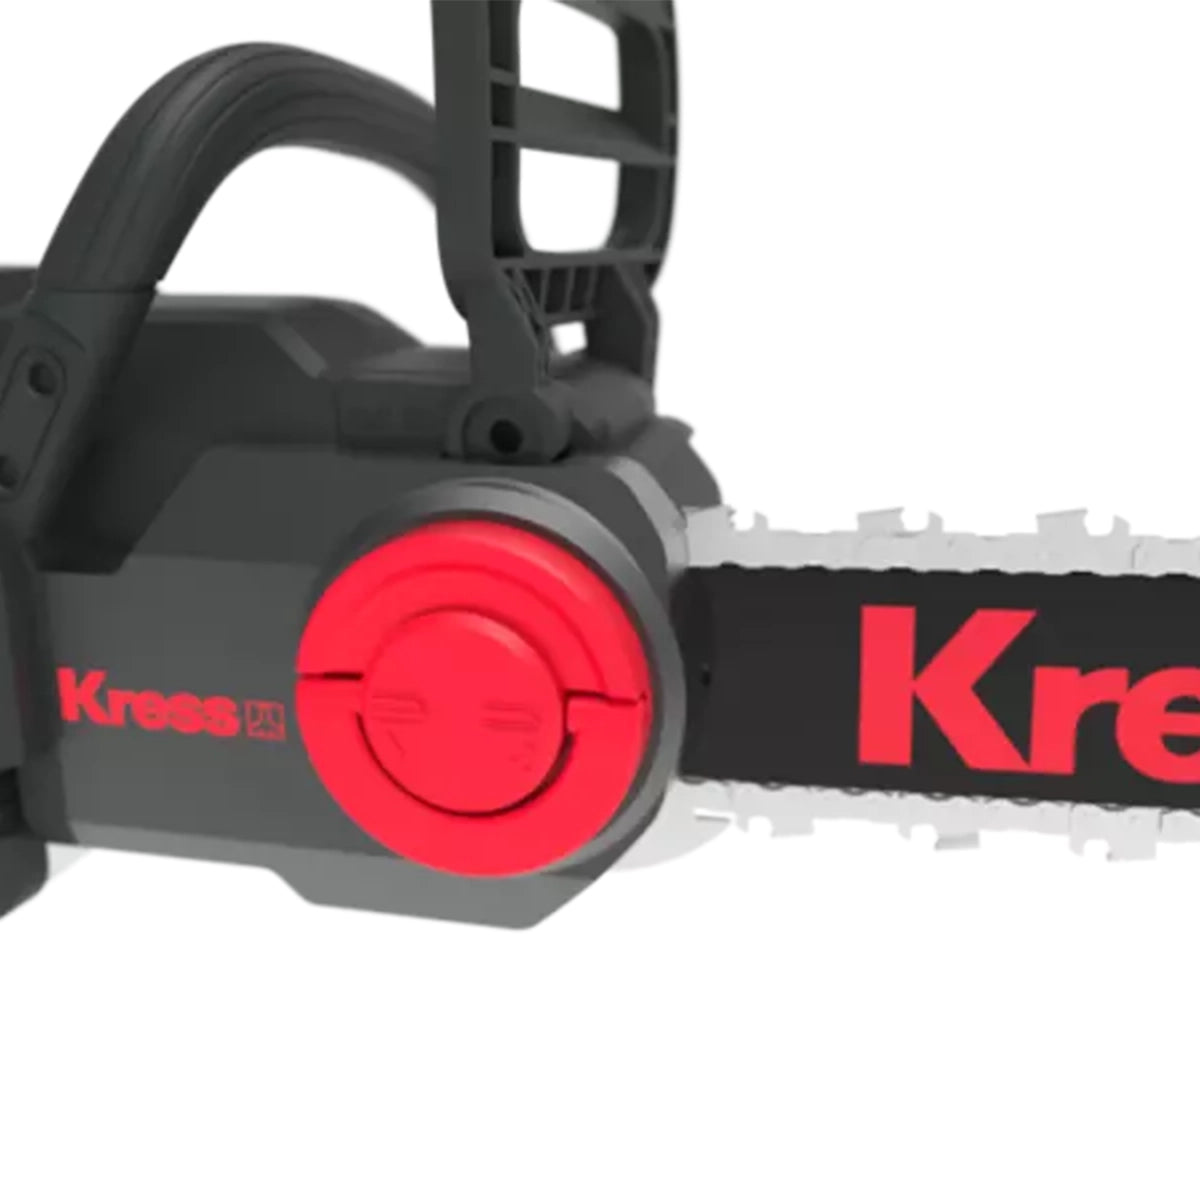 Kress KG367E.9 60V 35cm Cordless Chainsaw (Tool Only)